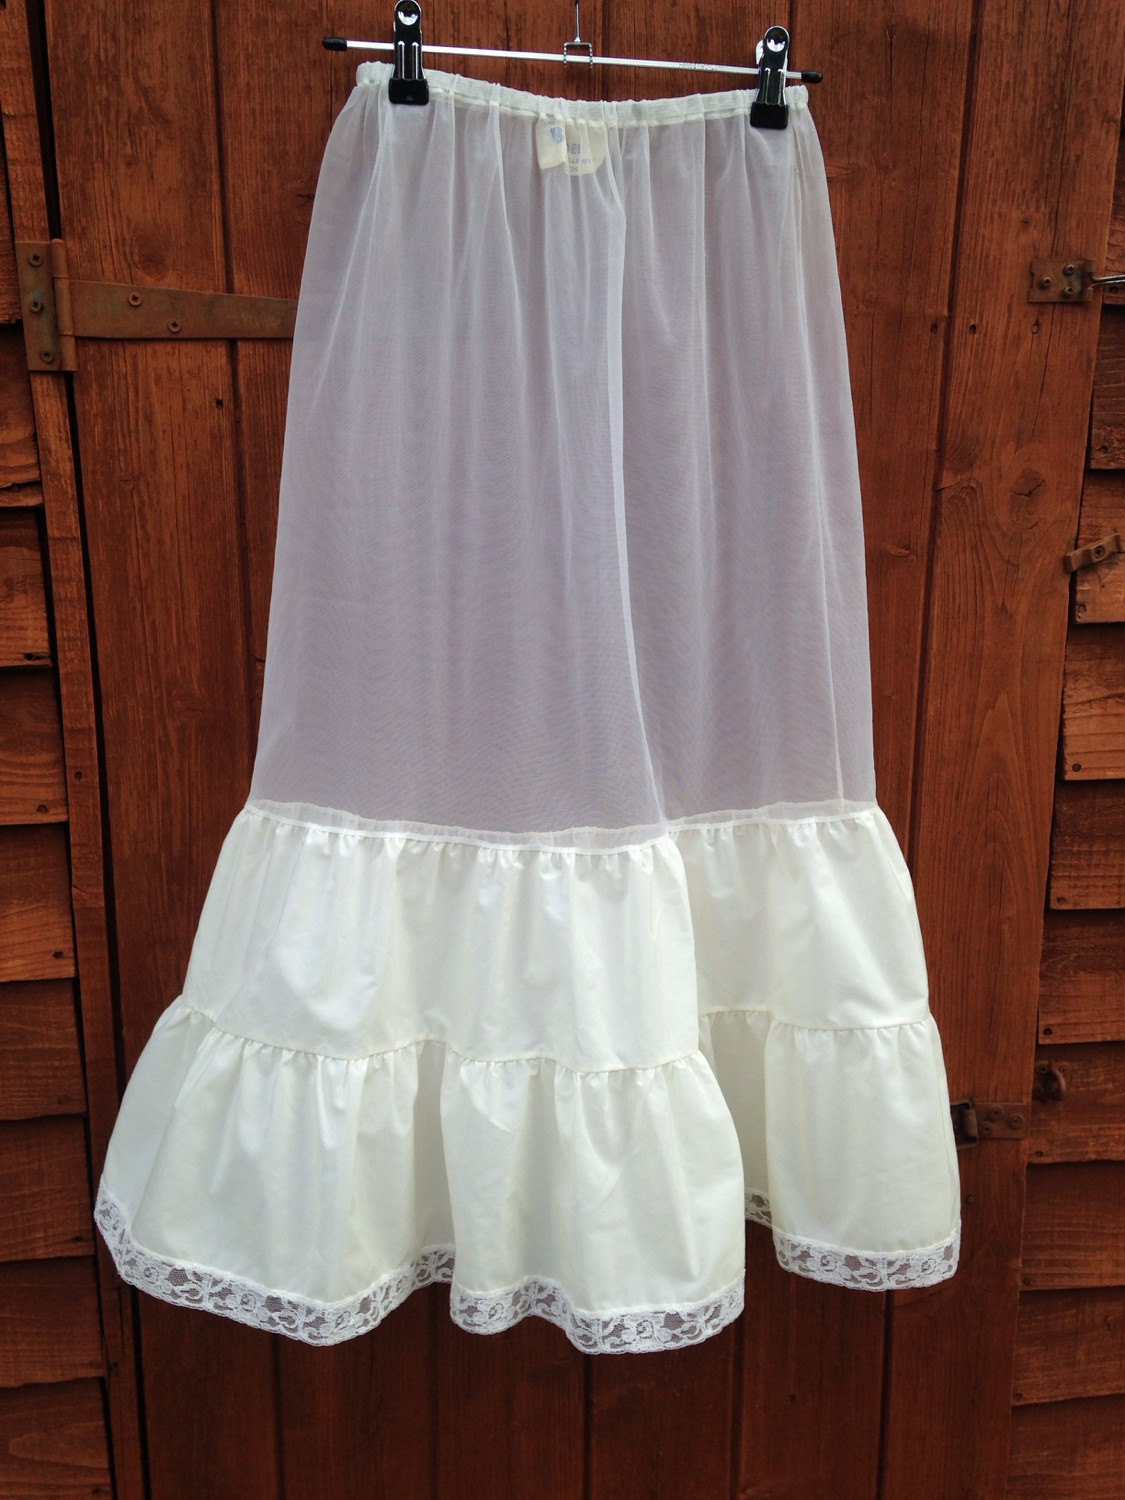 Vintage 1950s stiff nylon waist petticoat